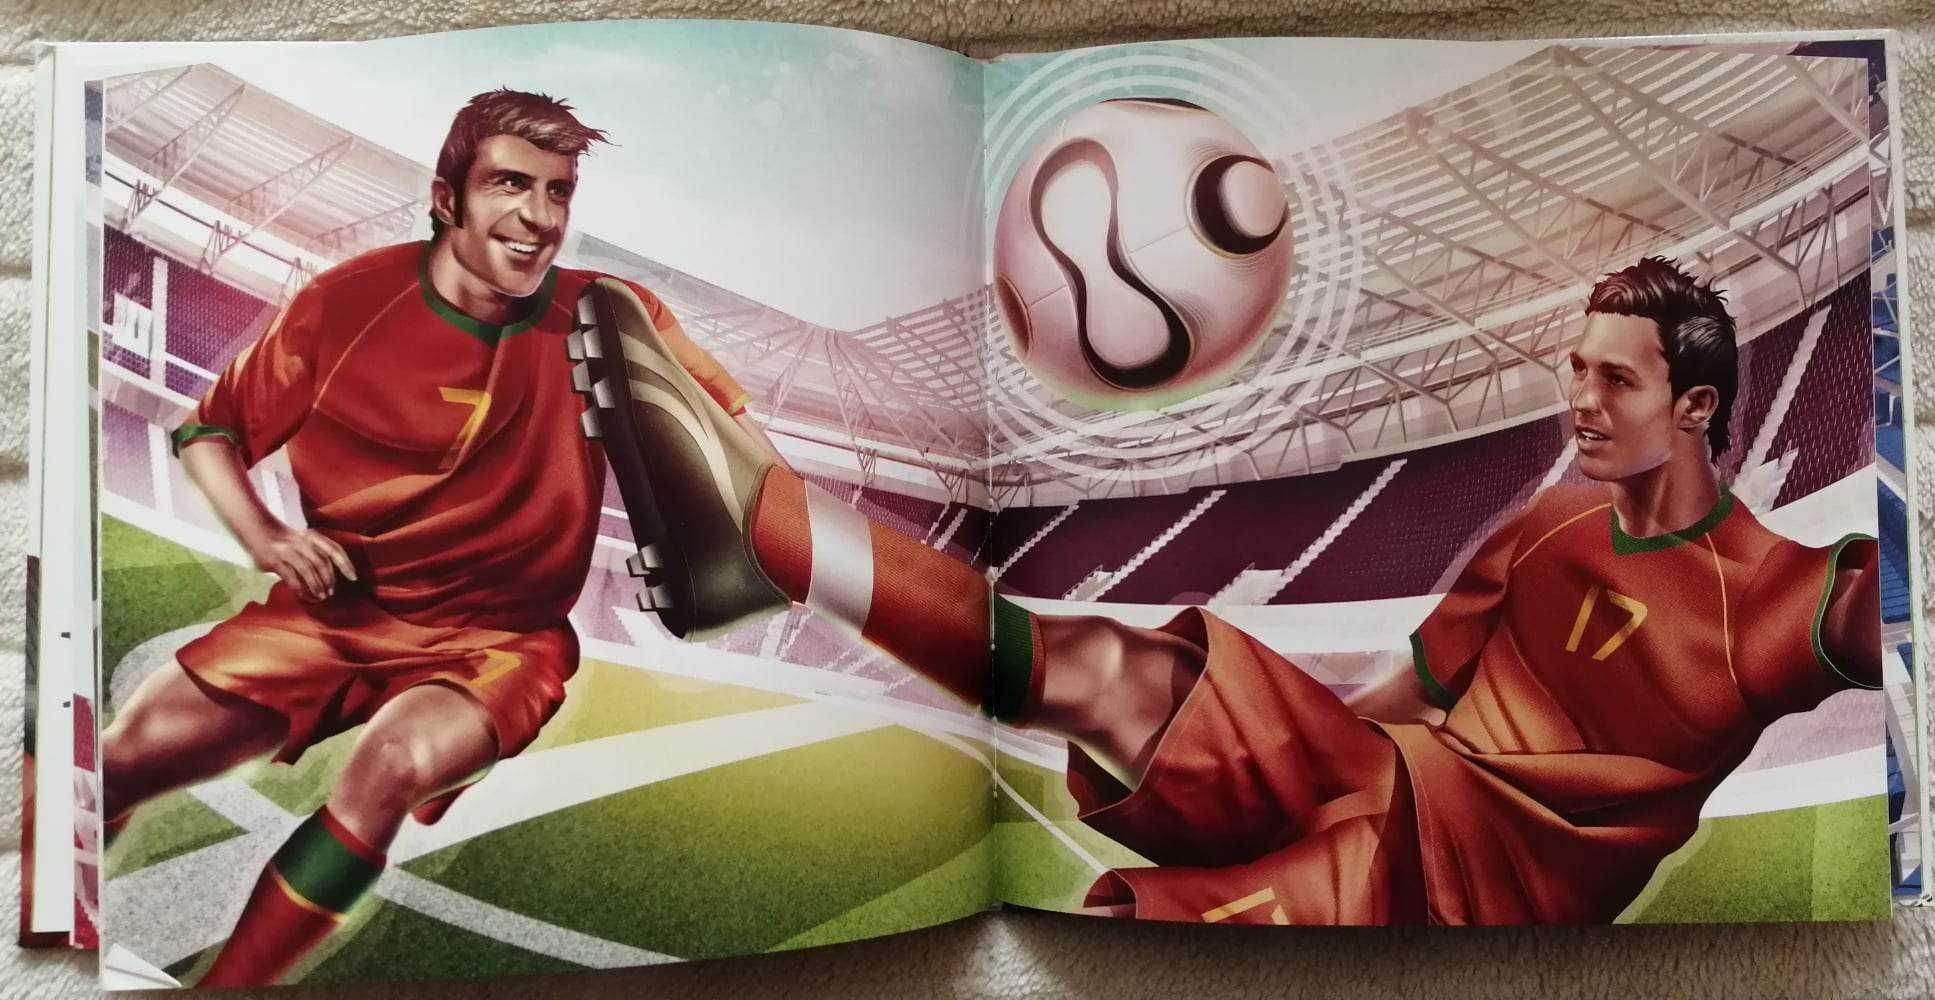 Filhos da Nação - Eusébio, Figo, Ronaldo, Mourinho - Volume II